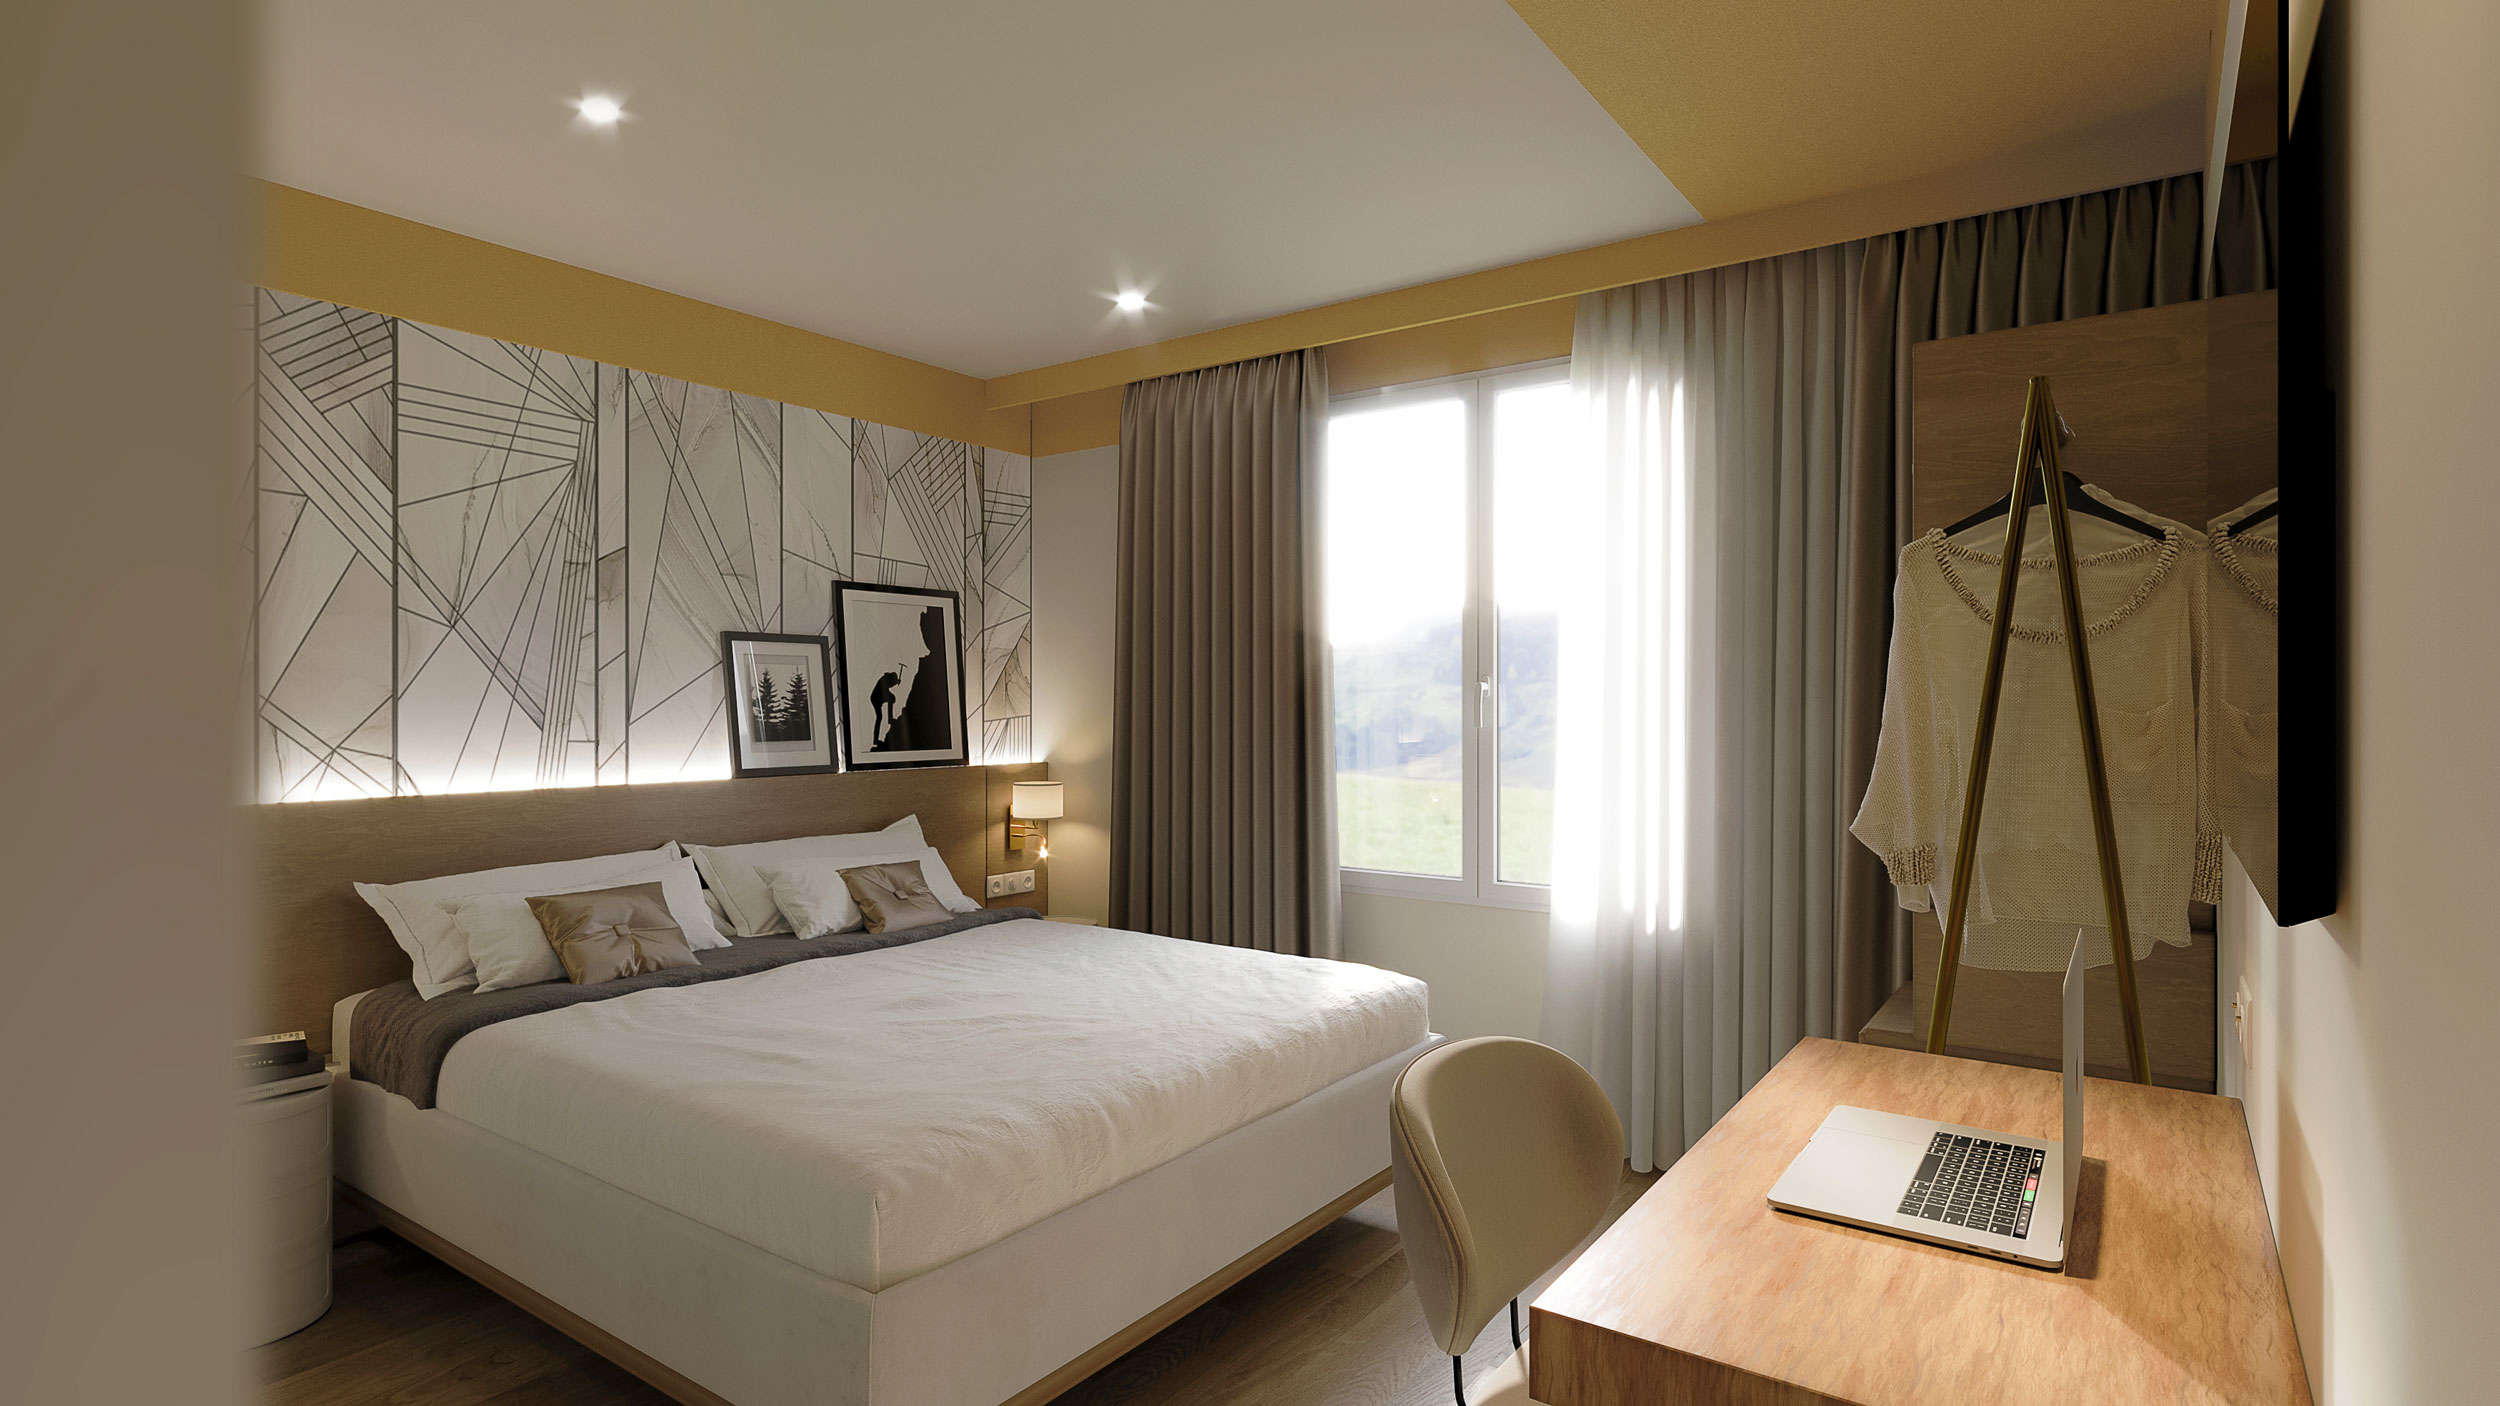 design intérieur de la chambre de l'hôtel Mercure avec ces revêtements muraux et son ambiance naturelle et chaleureuse